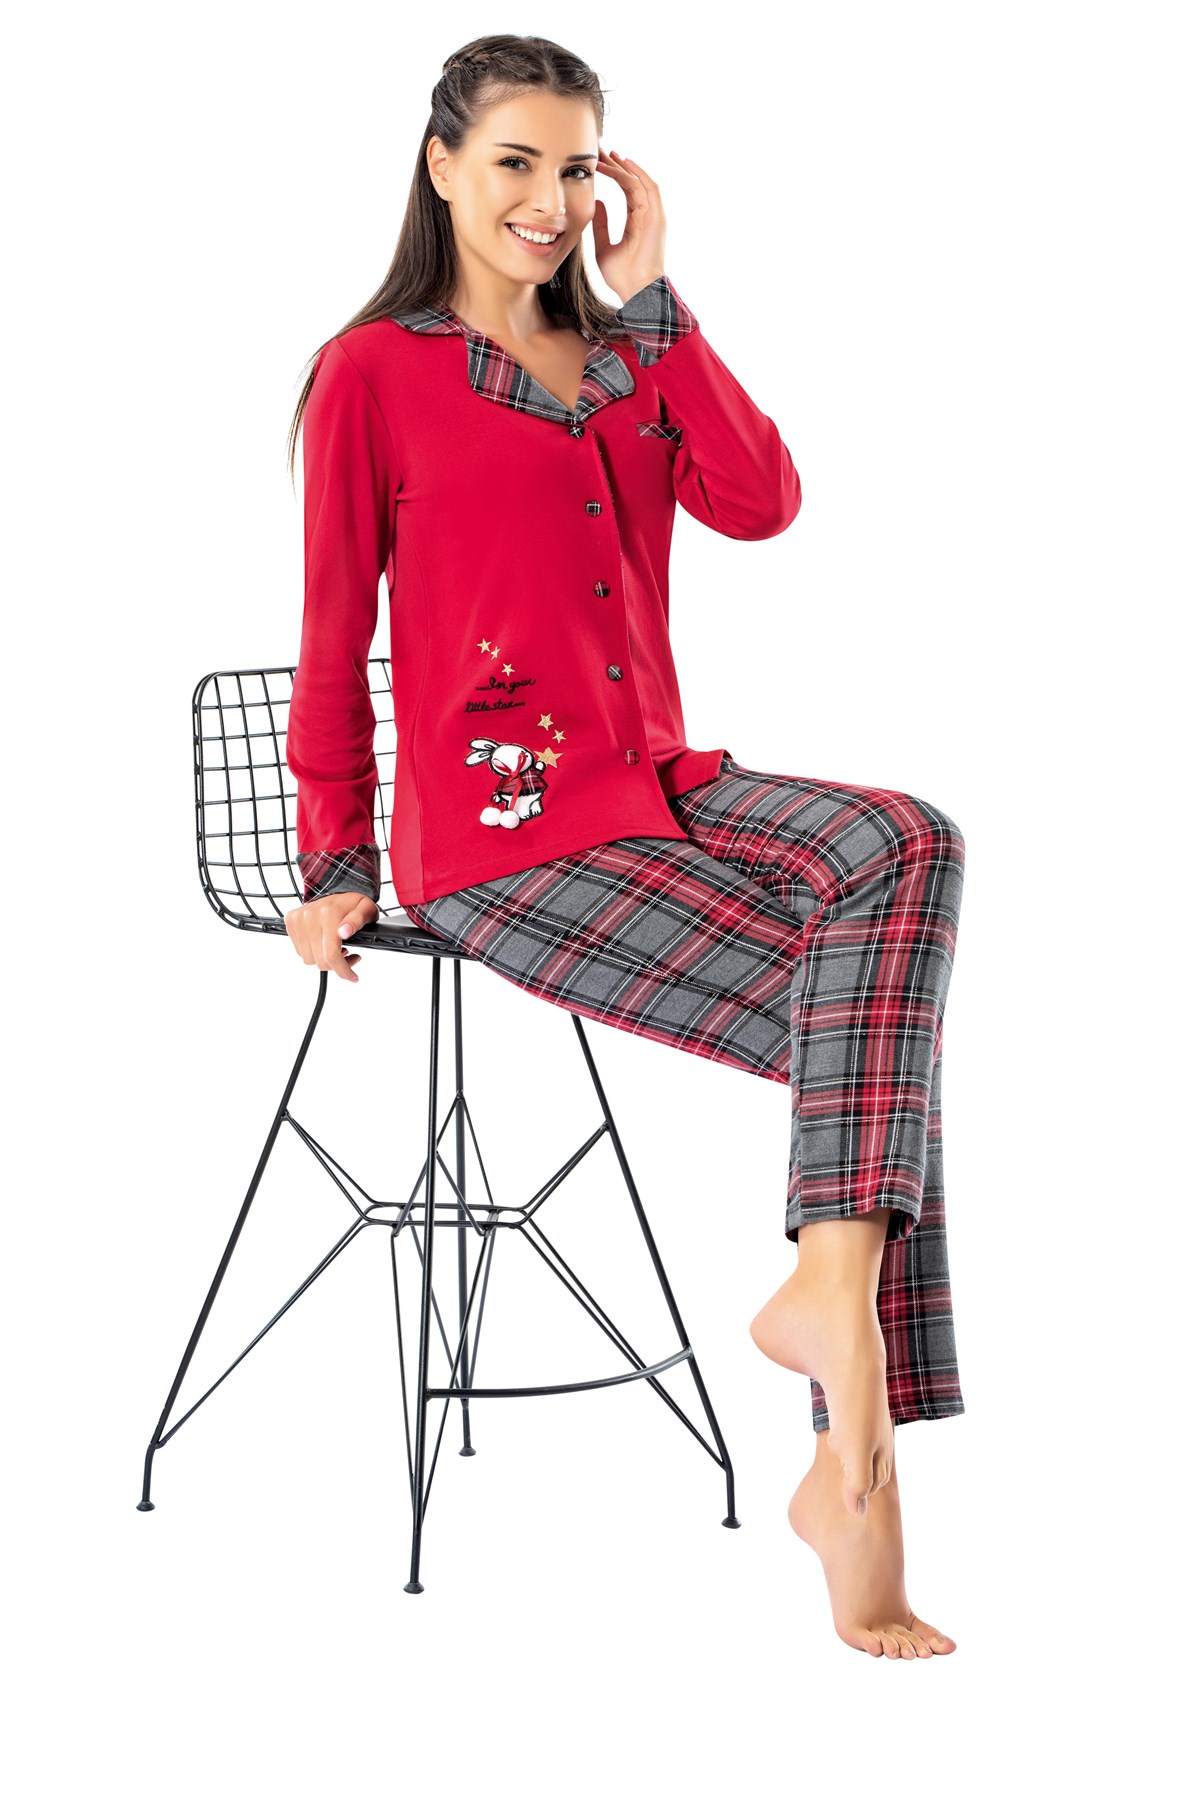 Erdem Bayan Kışlık Pijama Takımı: Erdem İç Giyim